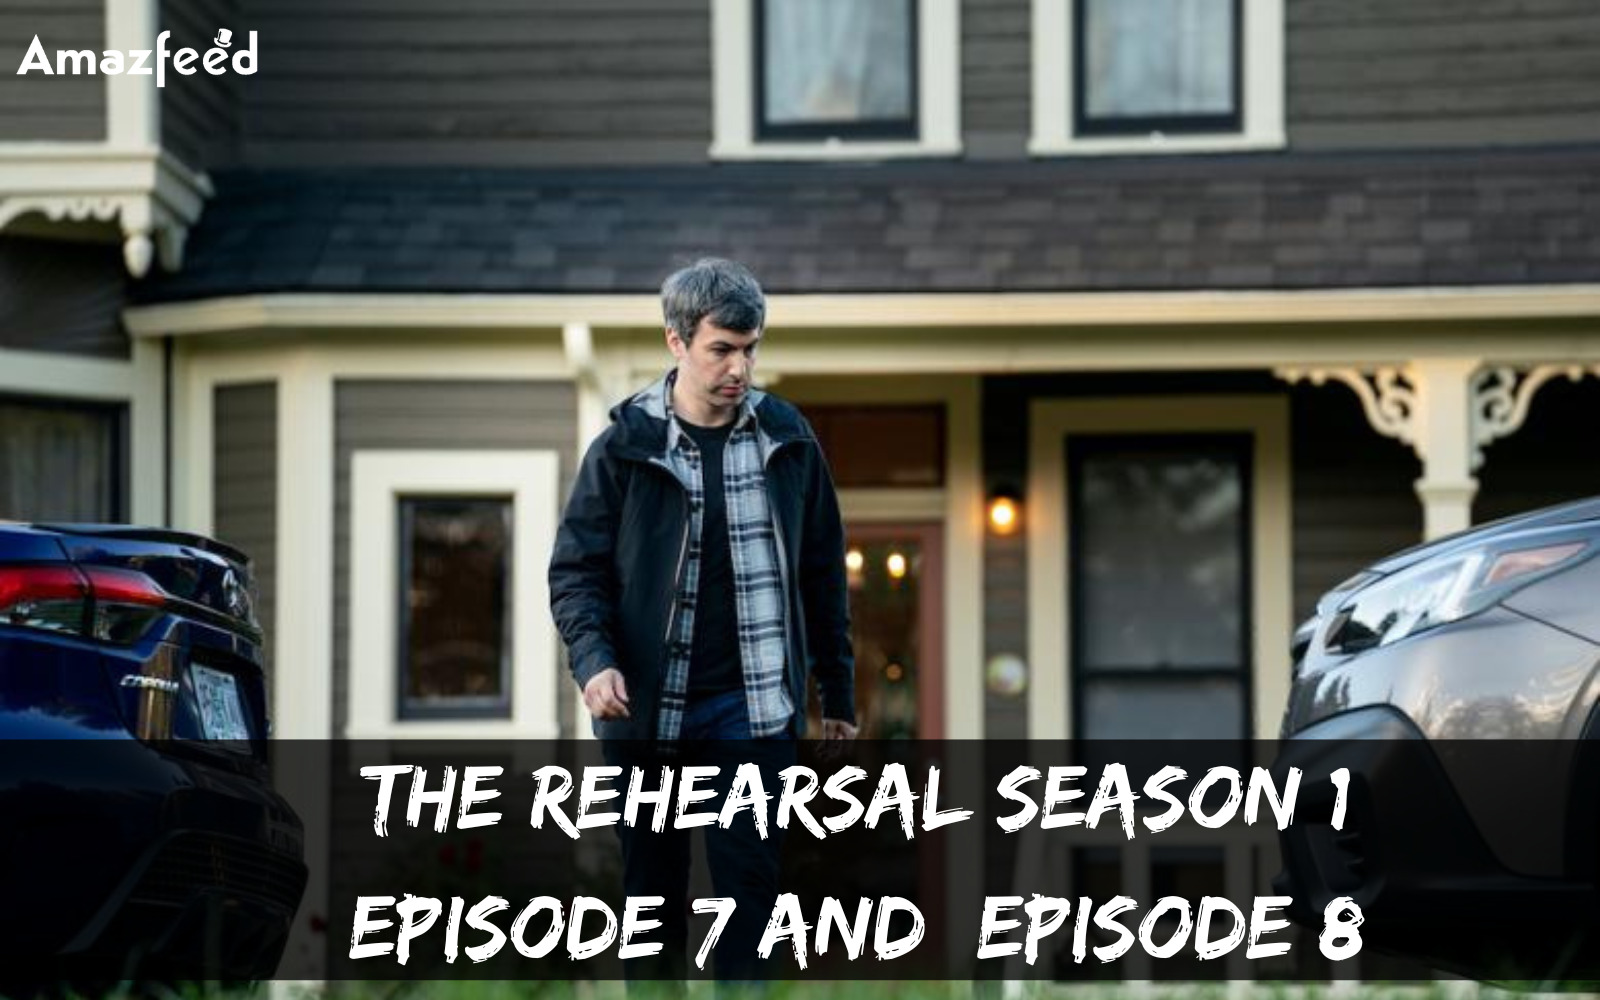 The Rehearsal Season 1 Episode 7 episode spoiler